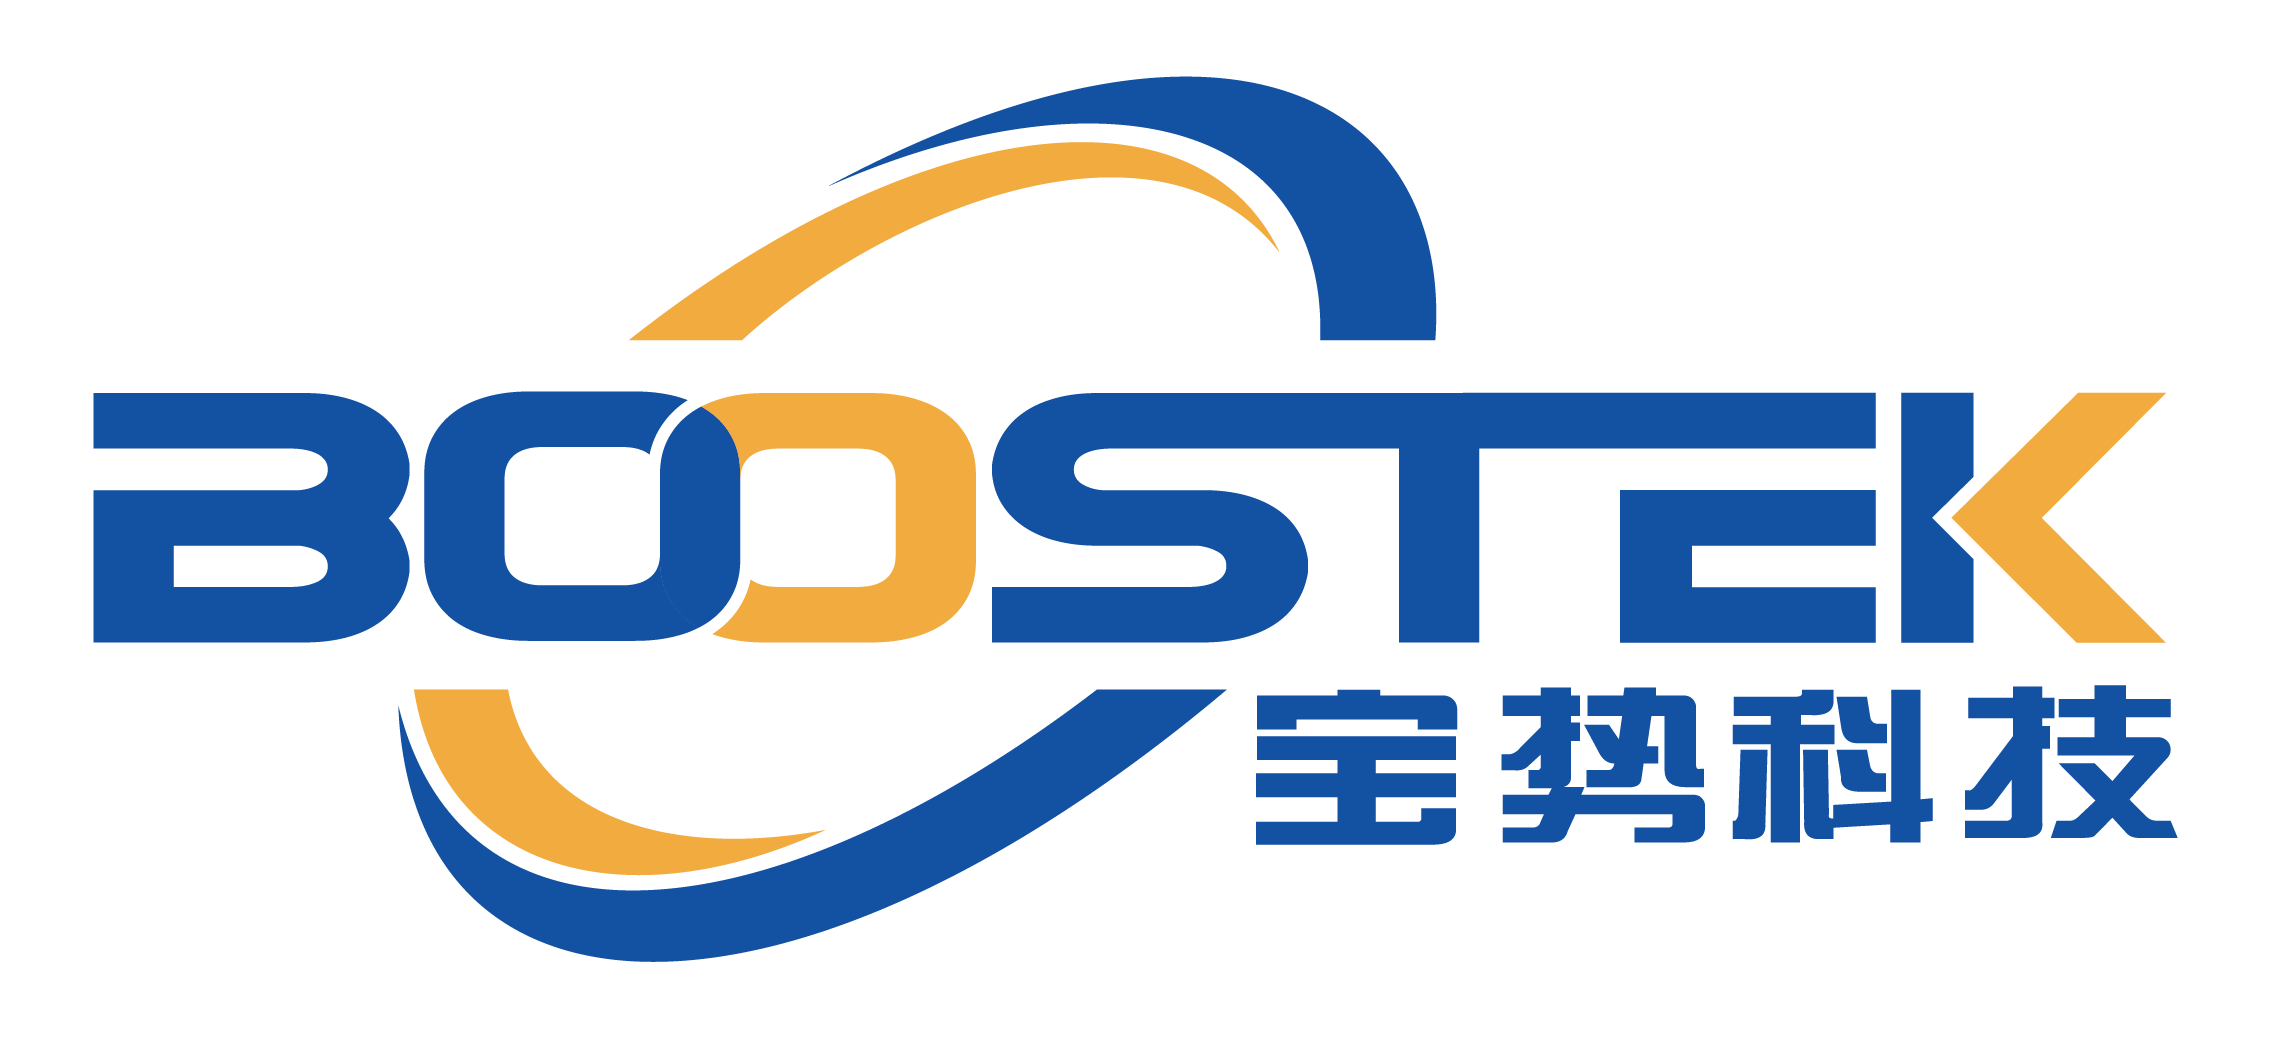 BS寶勢Logo透明2020030502